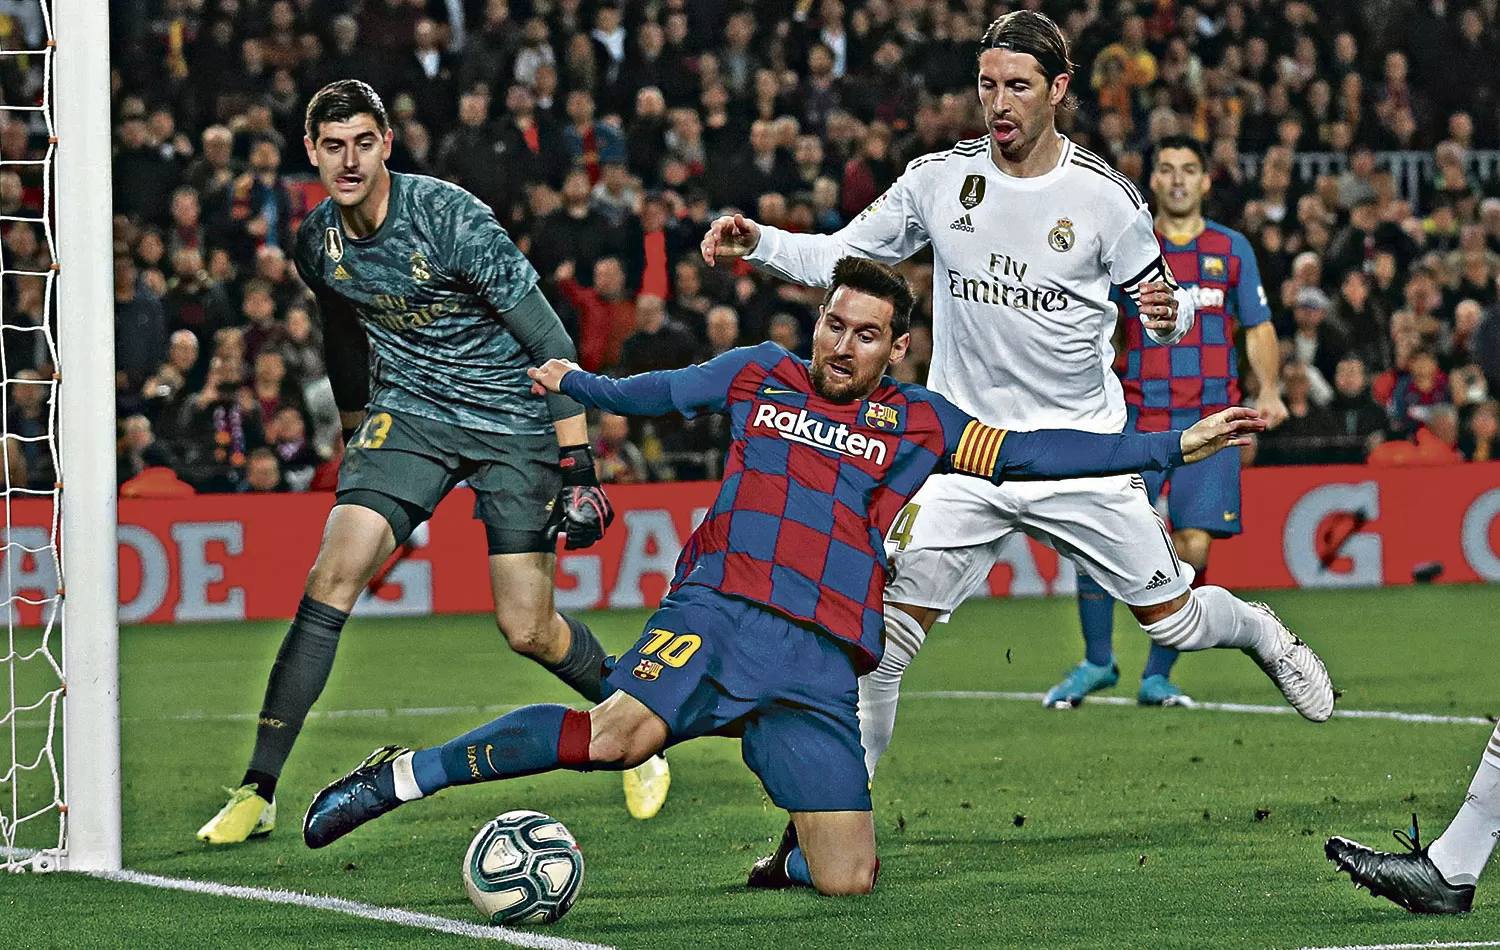 MESSI ES TERRESTRE. Lionel Messi, un jugador que muestra una capacidad asombrosa para definir, ayer se perdió una inmejorable posibilidad para marcar porque “pifió” su remate desde buena posición.